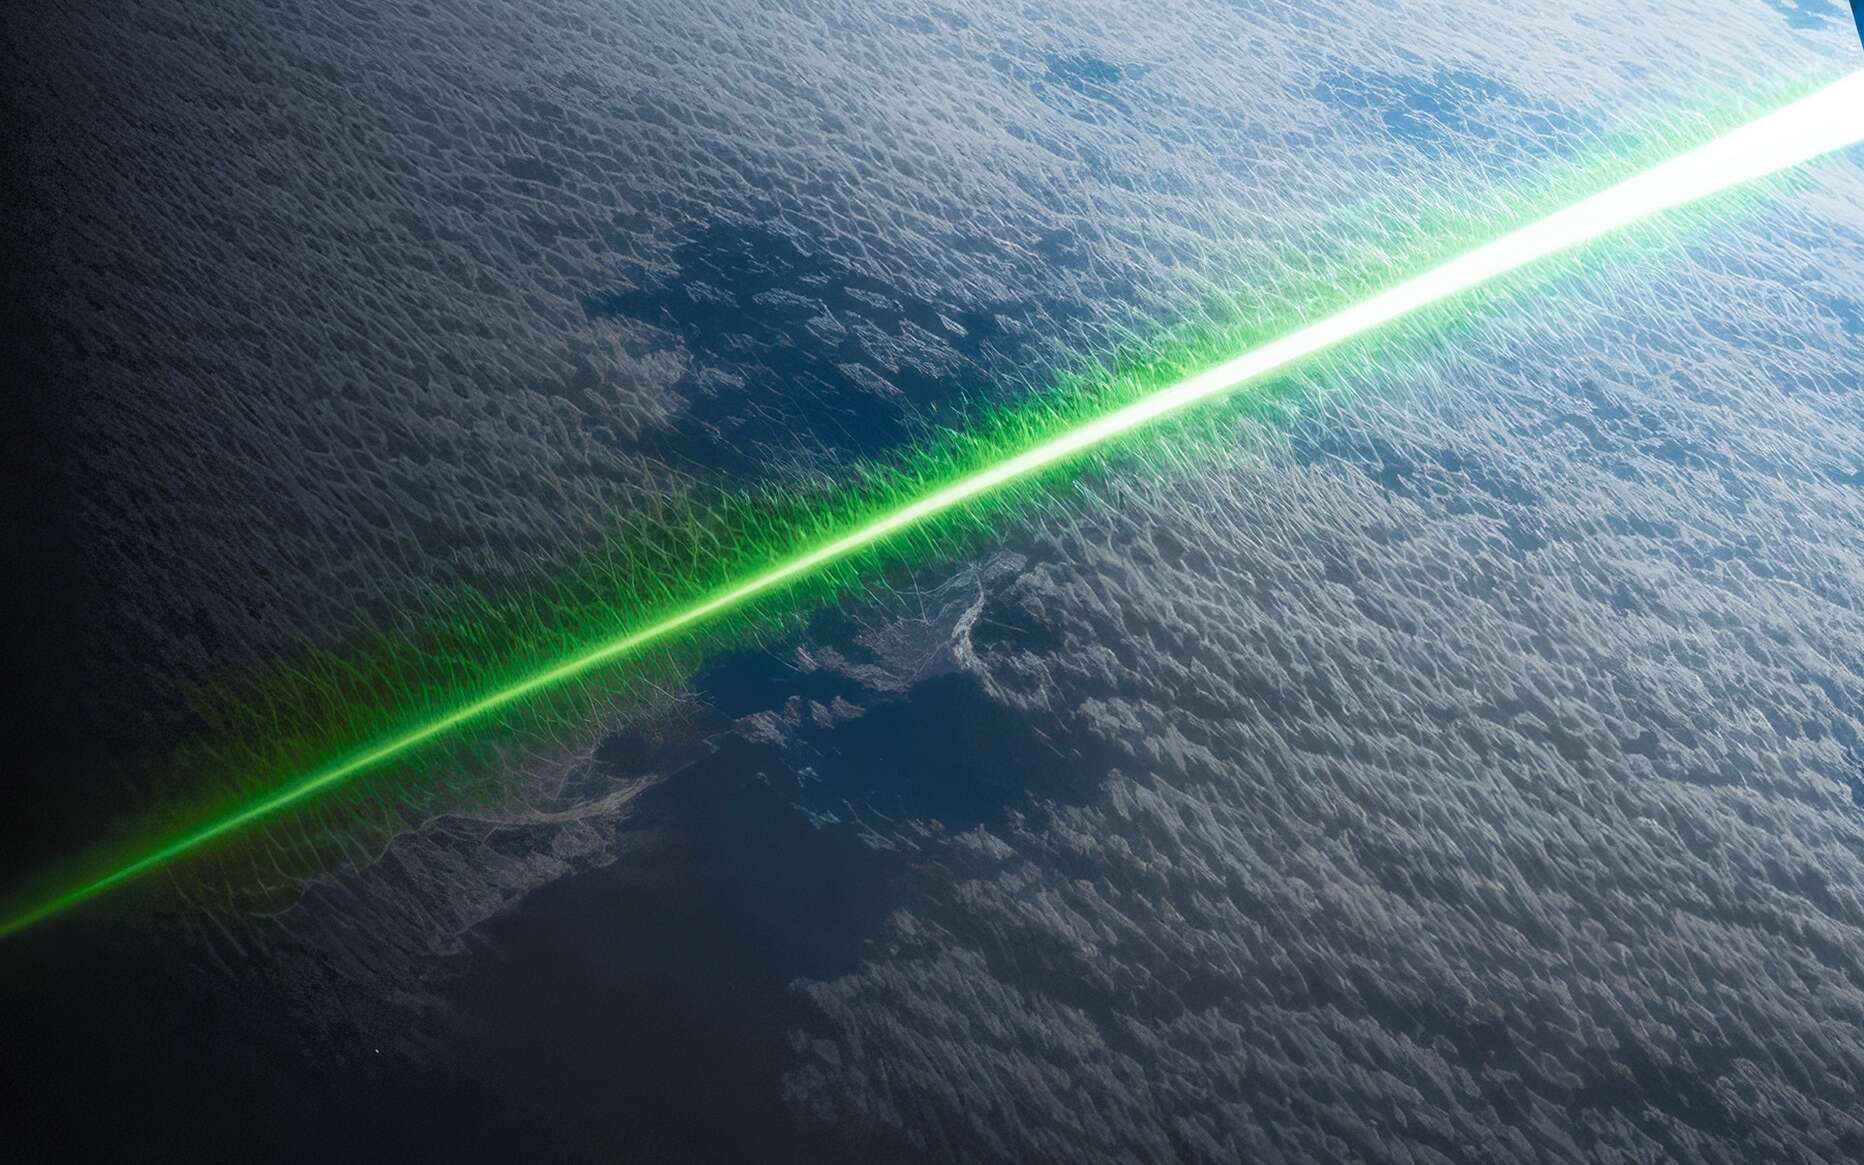 2000mW haute puissance a attaqué la tête vert lumière laser